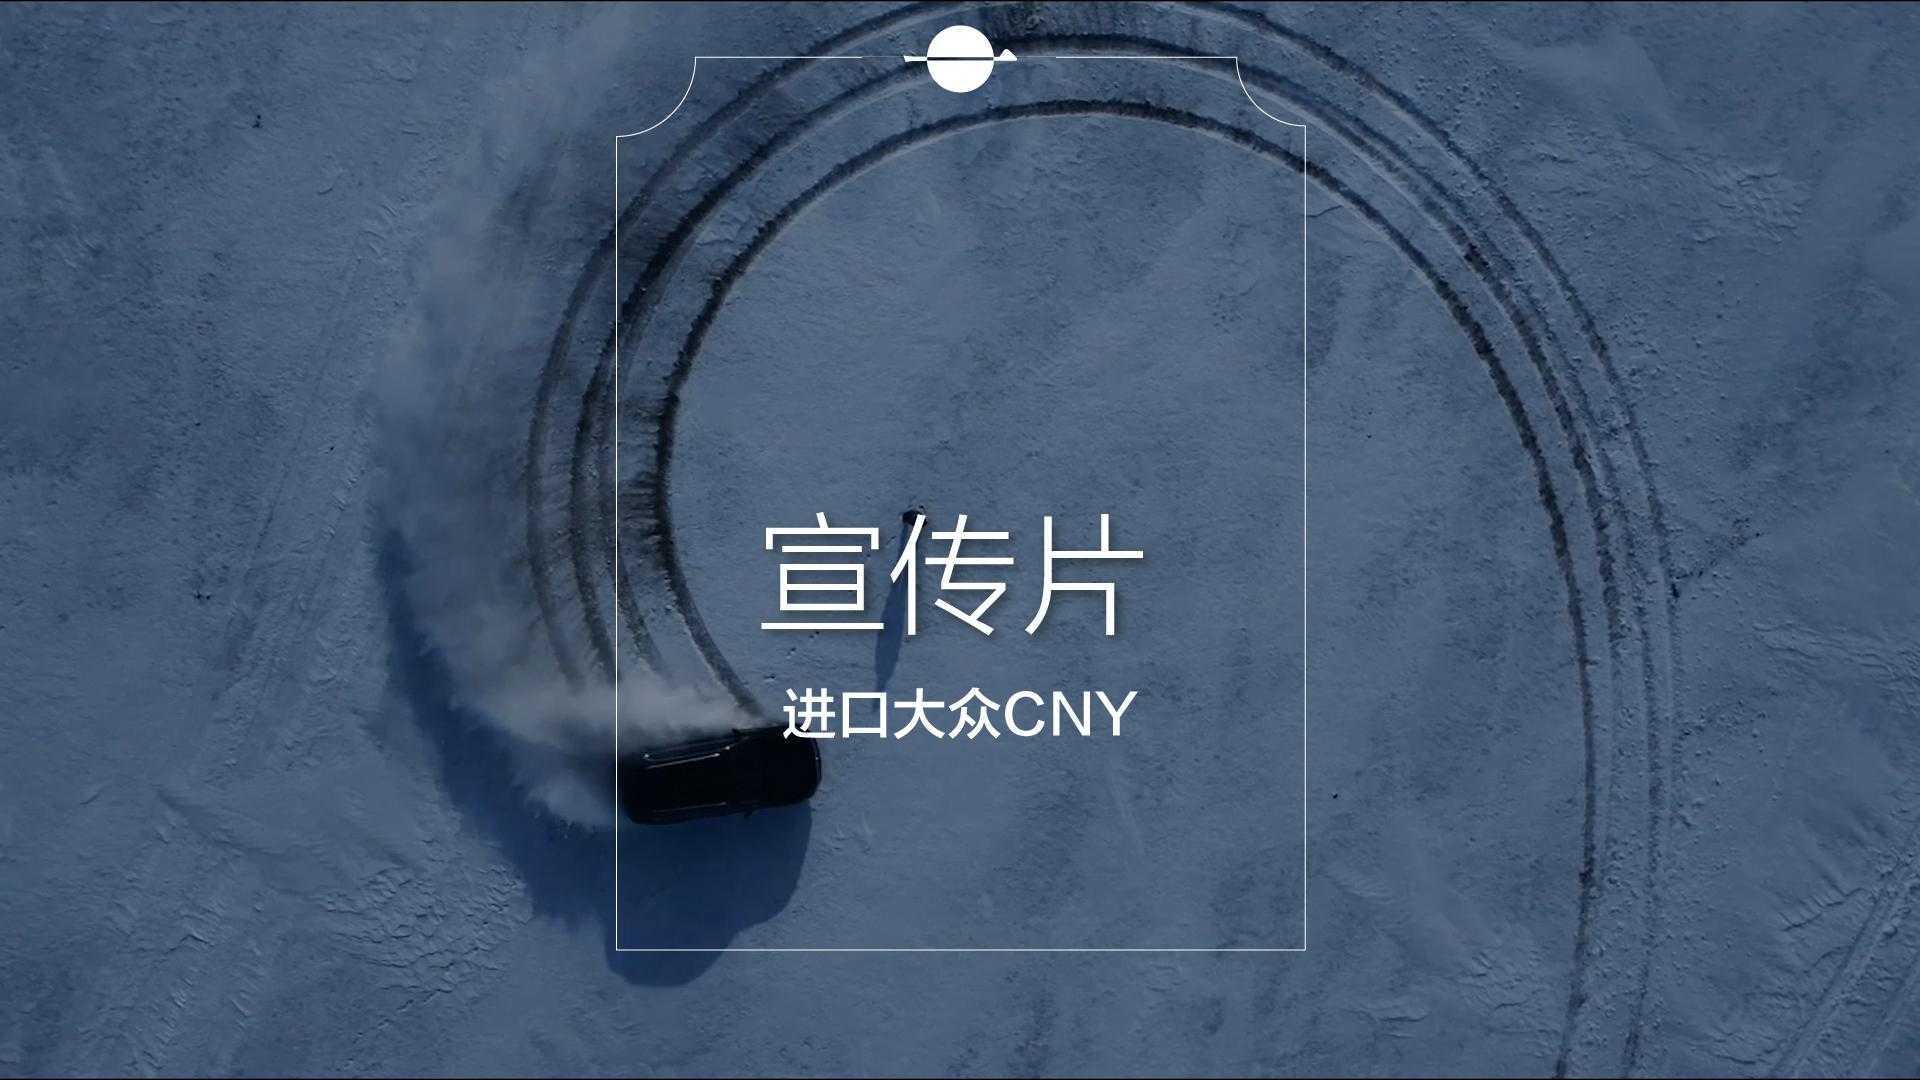 大众汽车X书法家秦川联盟新年宣传片【一咿影视】